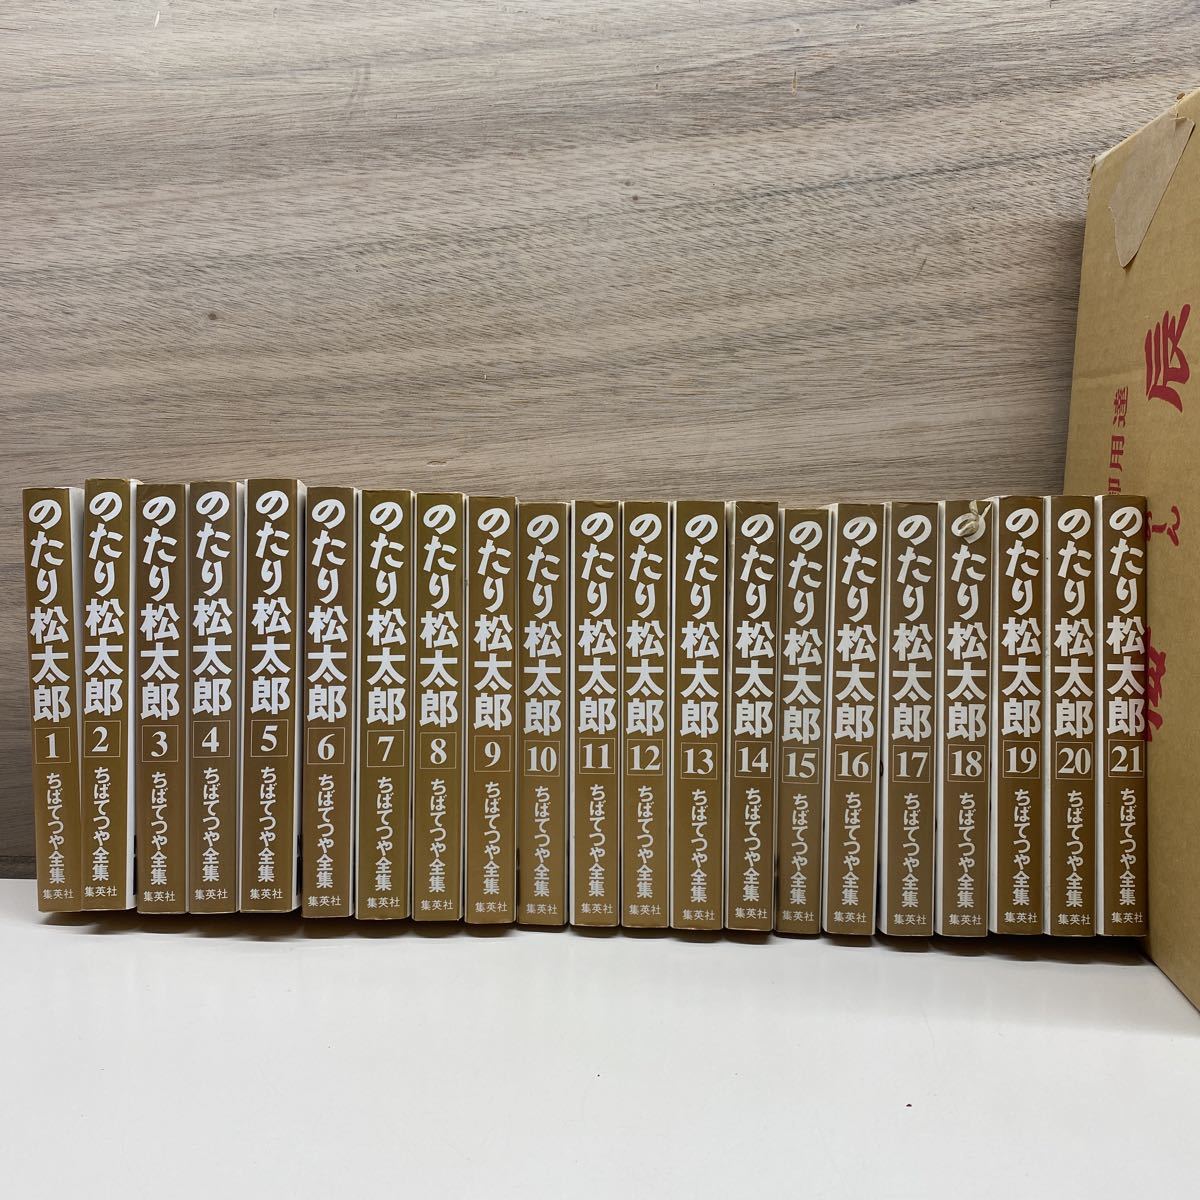 全初版 のたり松太郎 1〜21巻 全21巻セット 全巻セット ちばてつや 